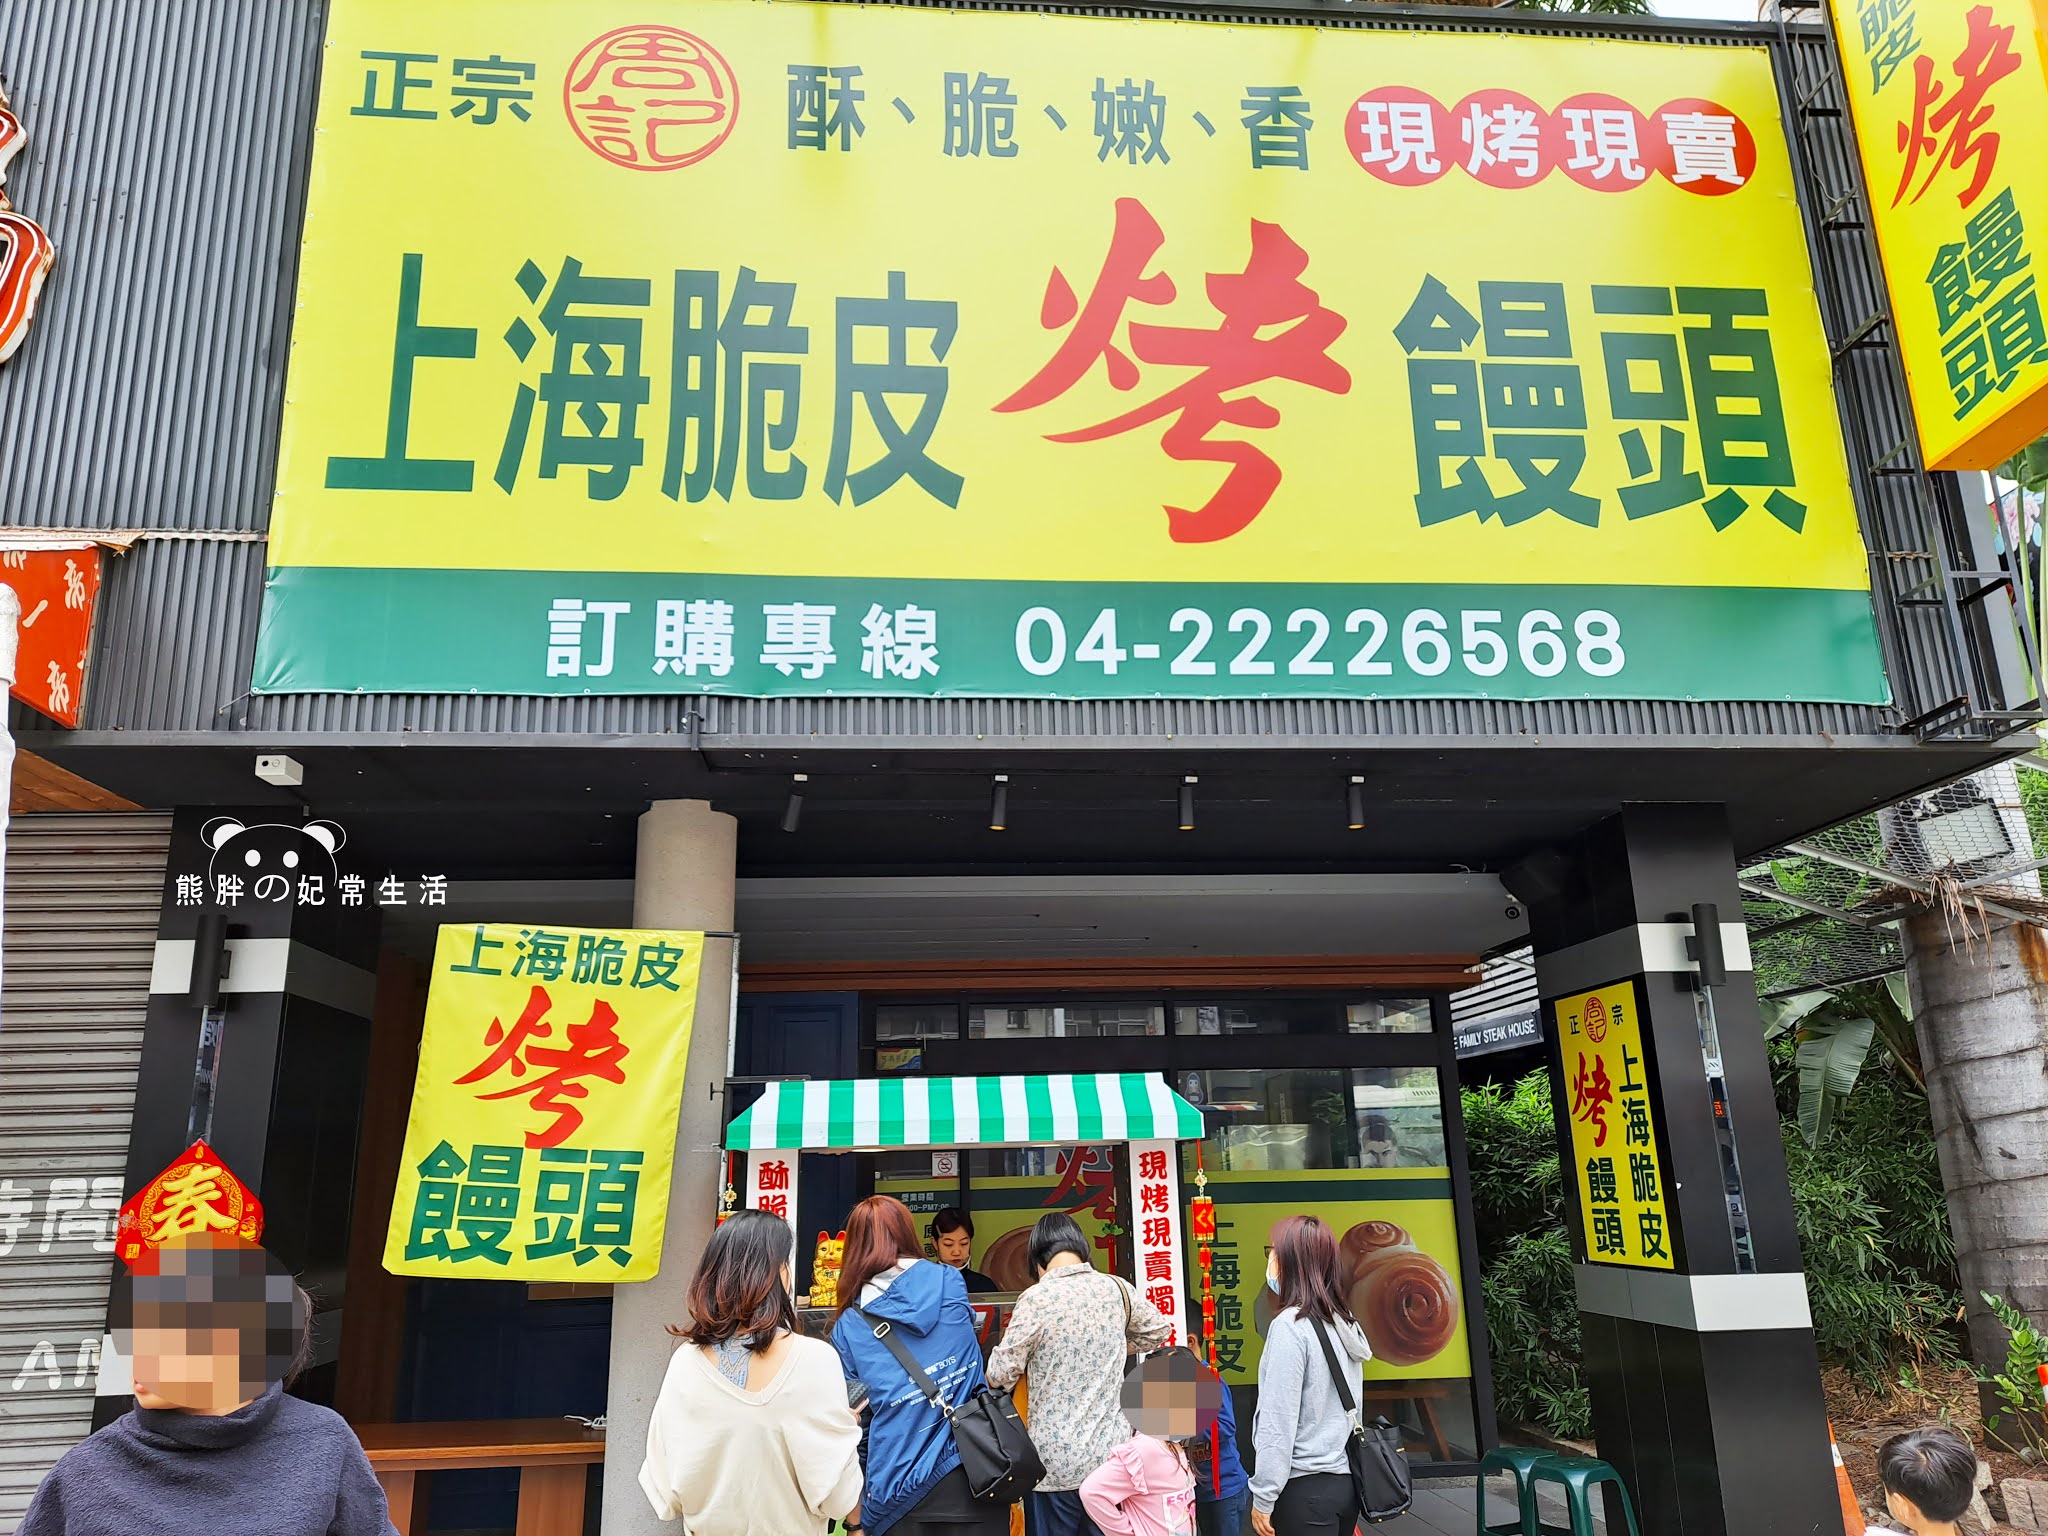 台中,南區,周記上海脆皮烤饅頭,饅頭,烤饅頭,市場